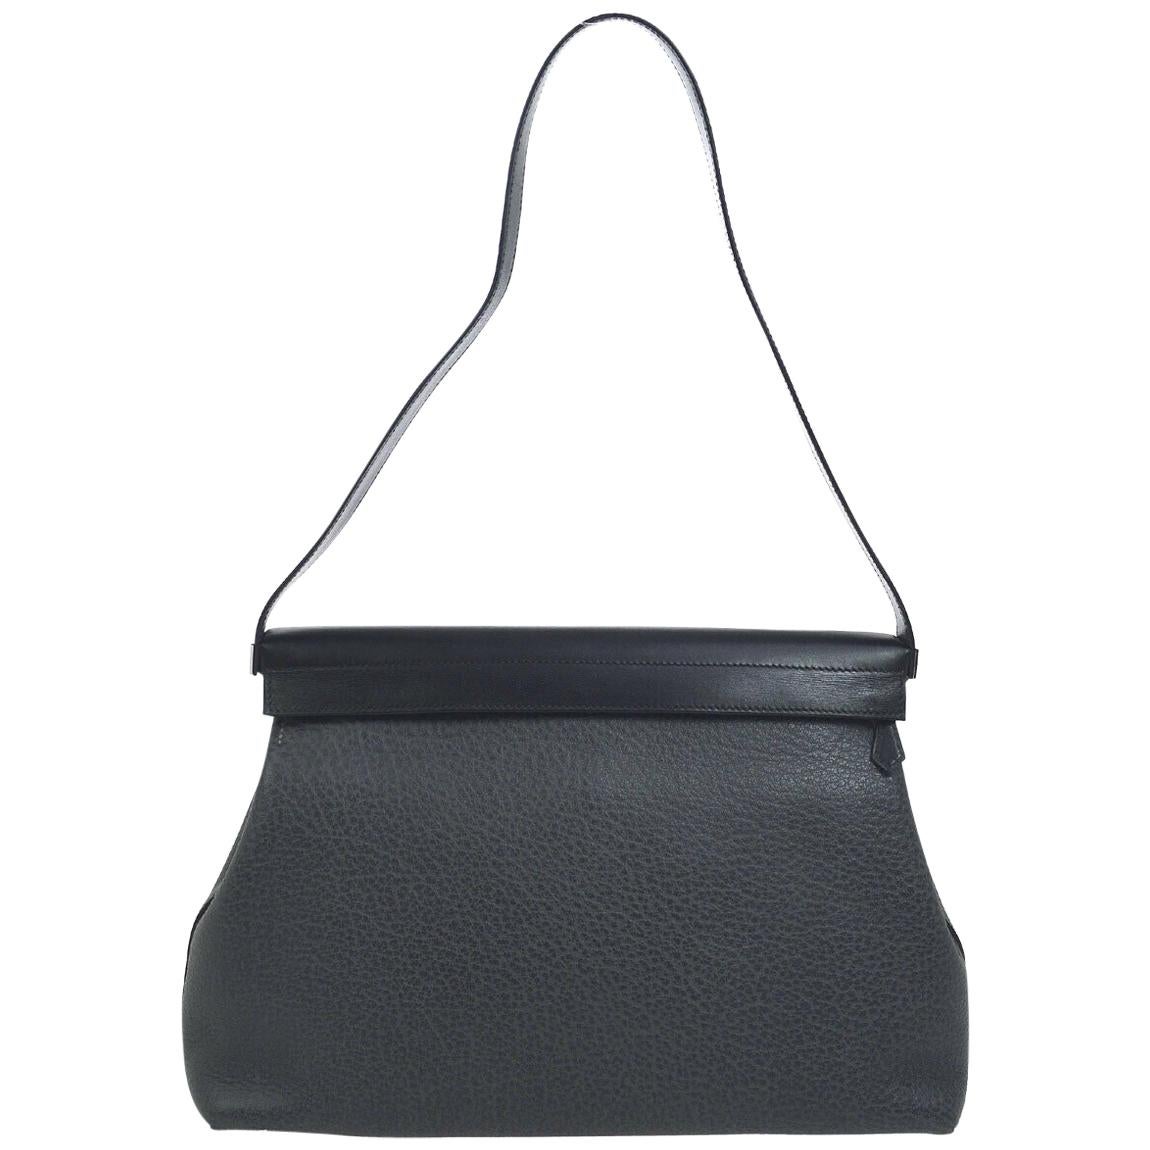 Hermes Black Leather Evening Top Handle Satchel Small Shoulder Bag